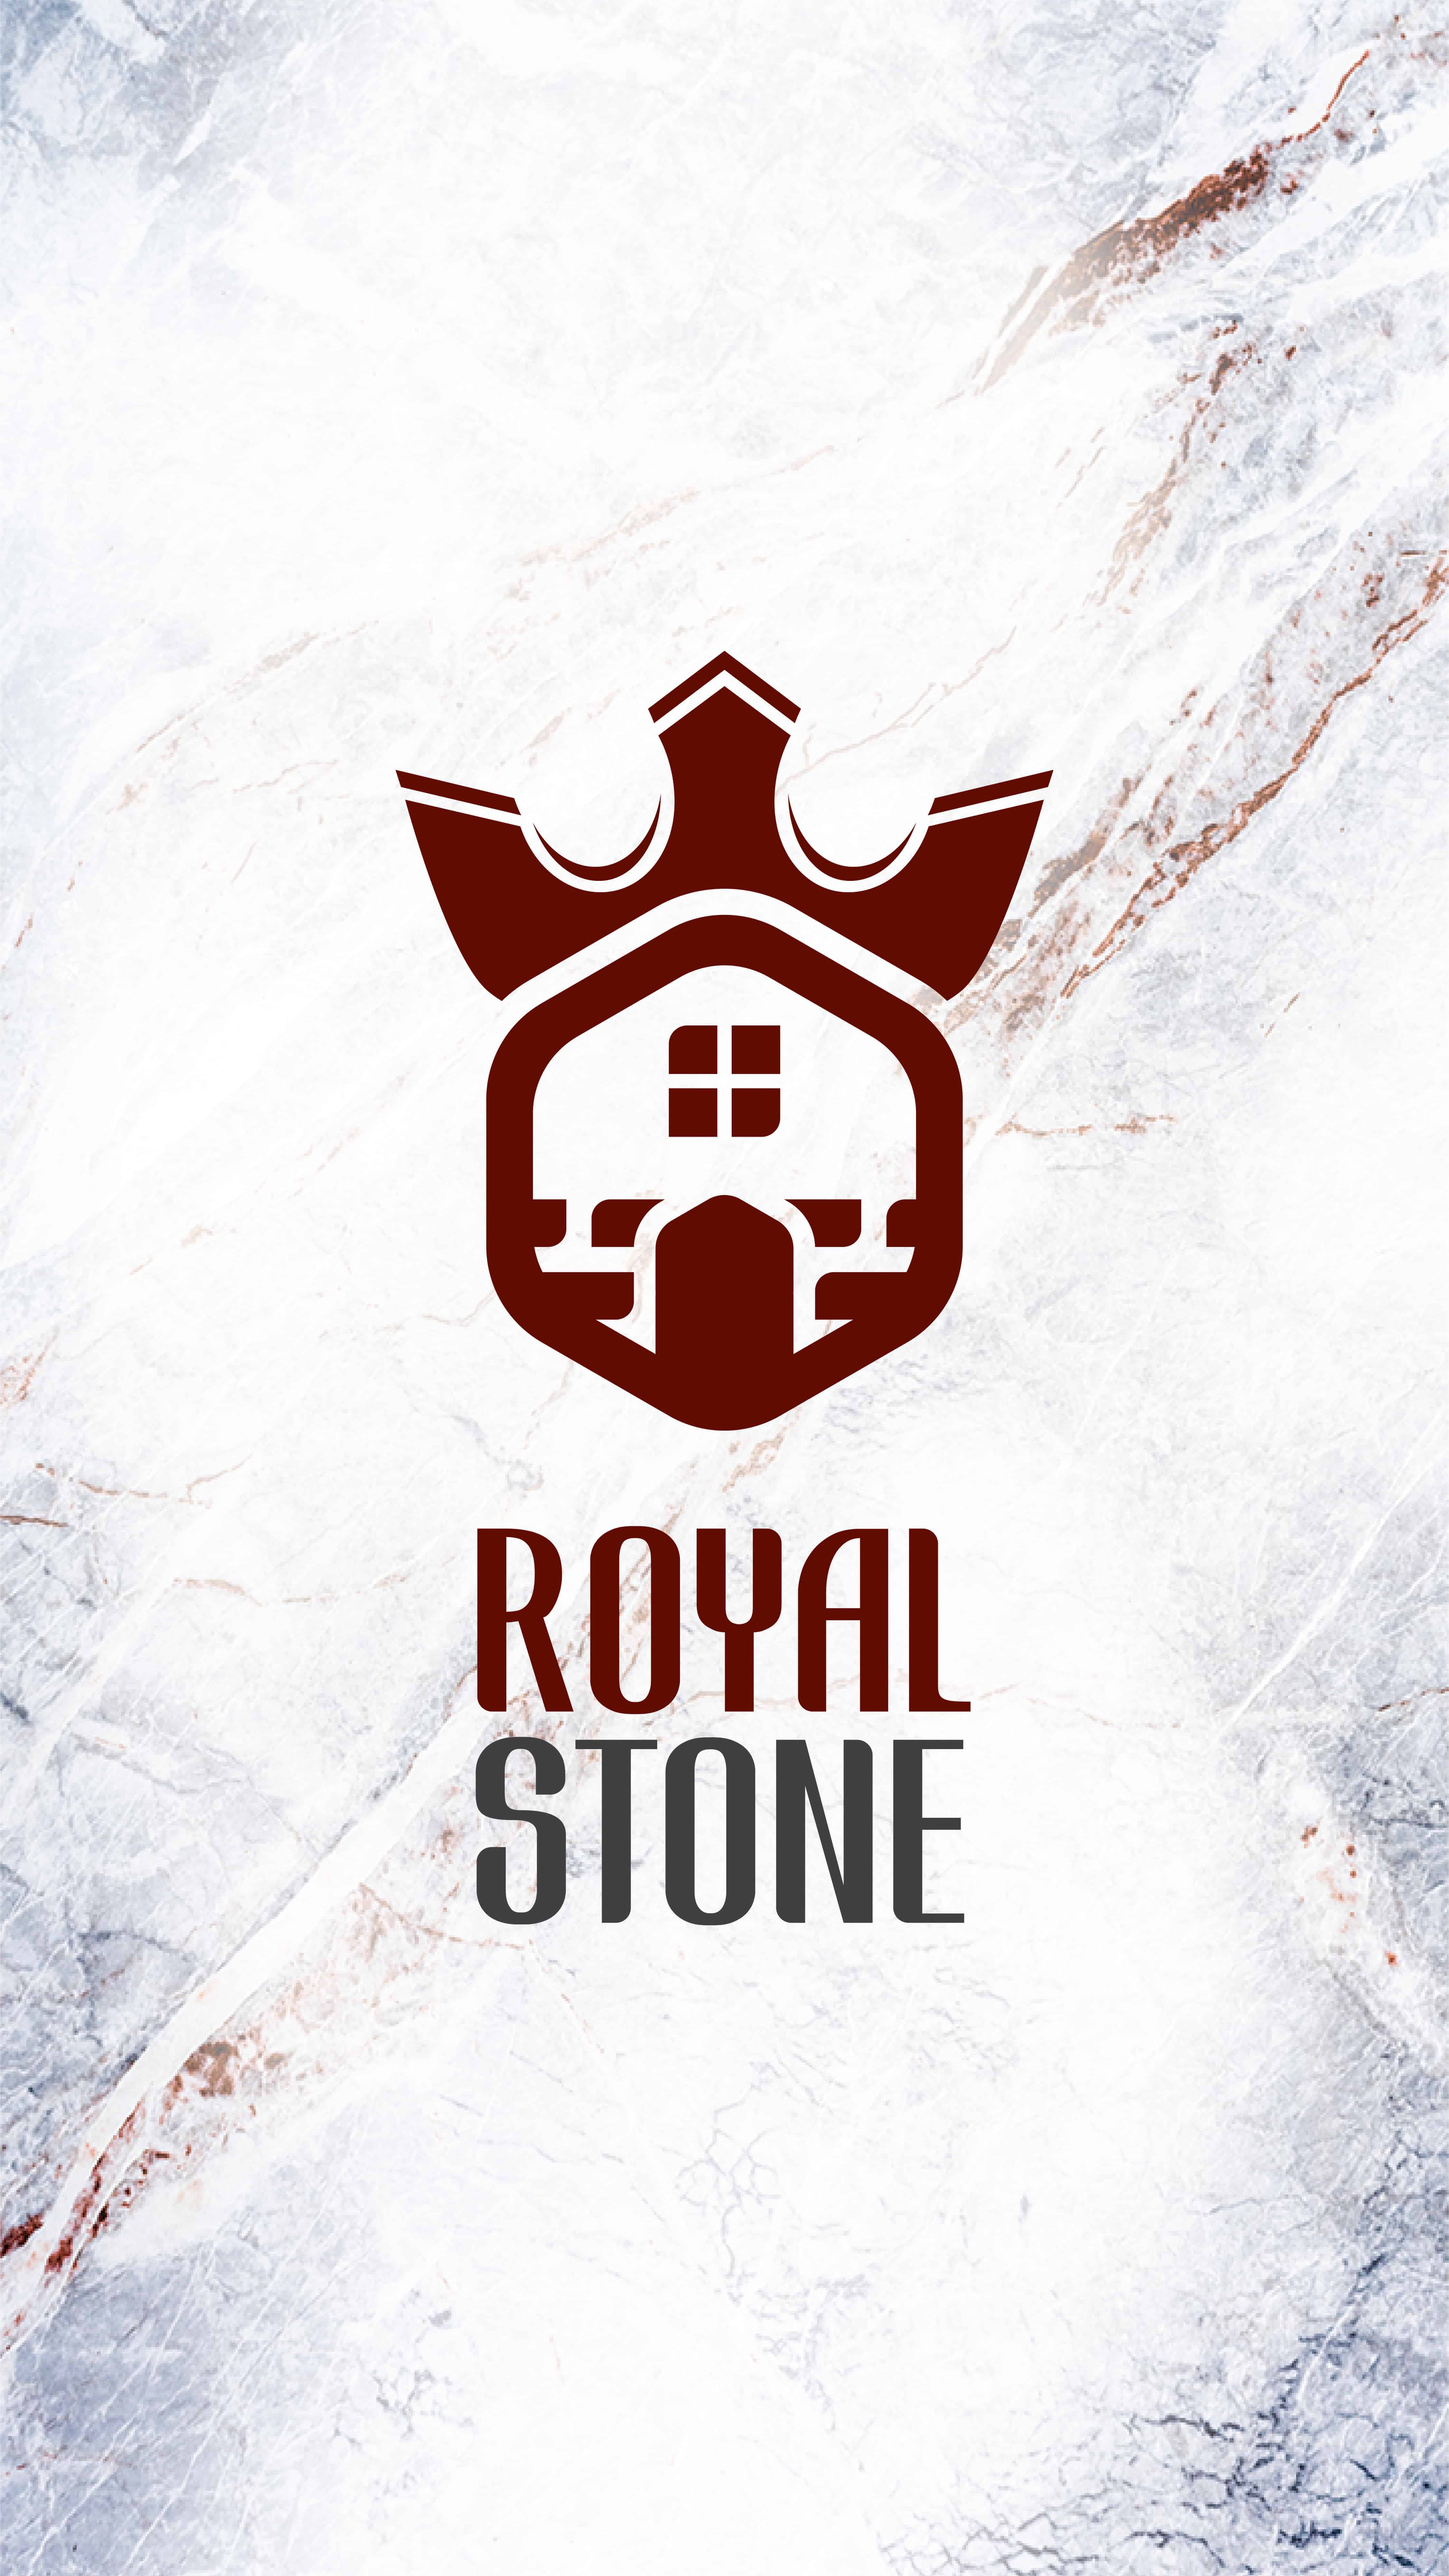 Royal Stone GmbH 